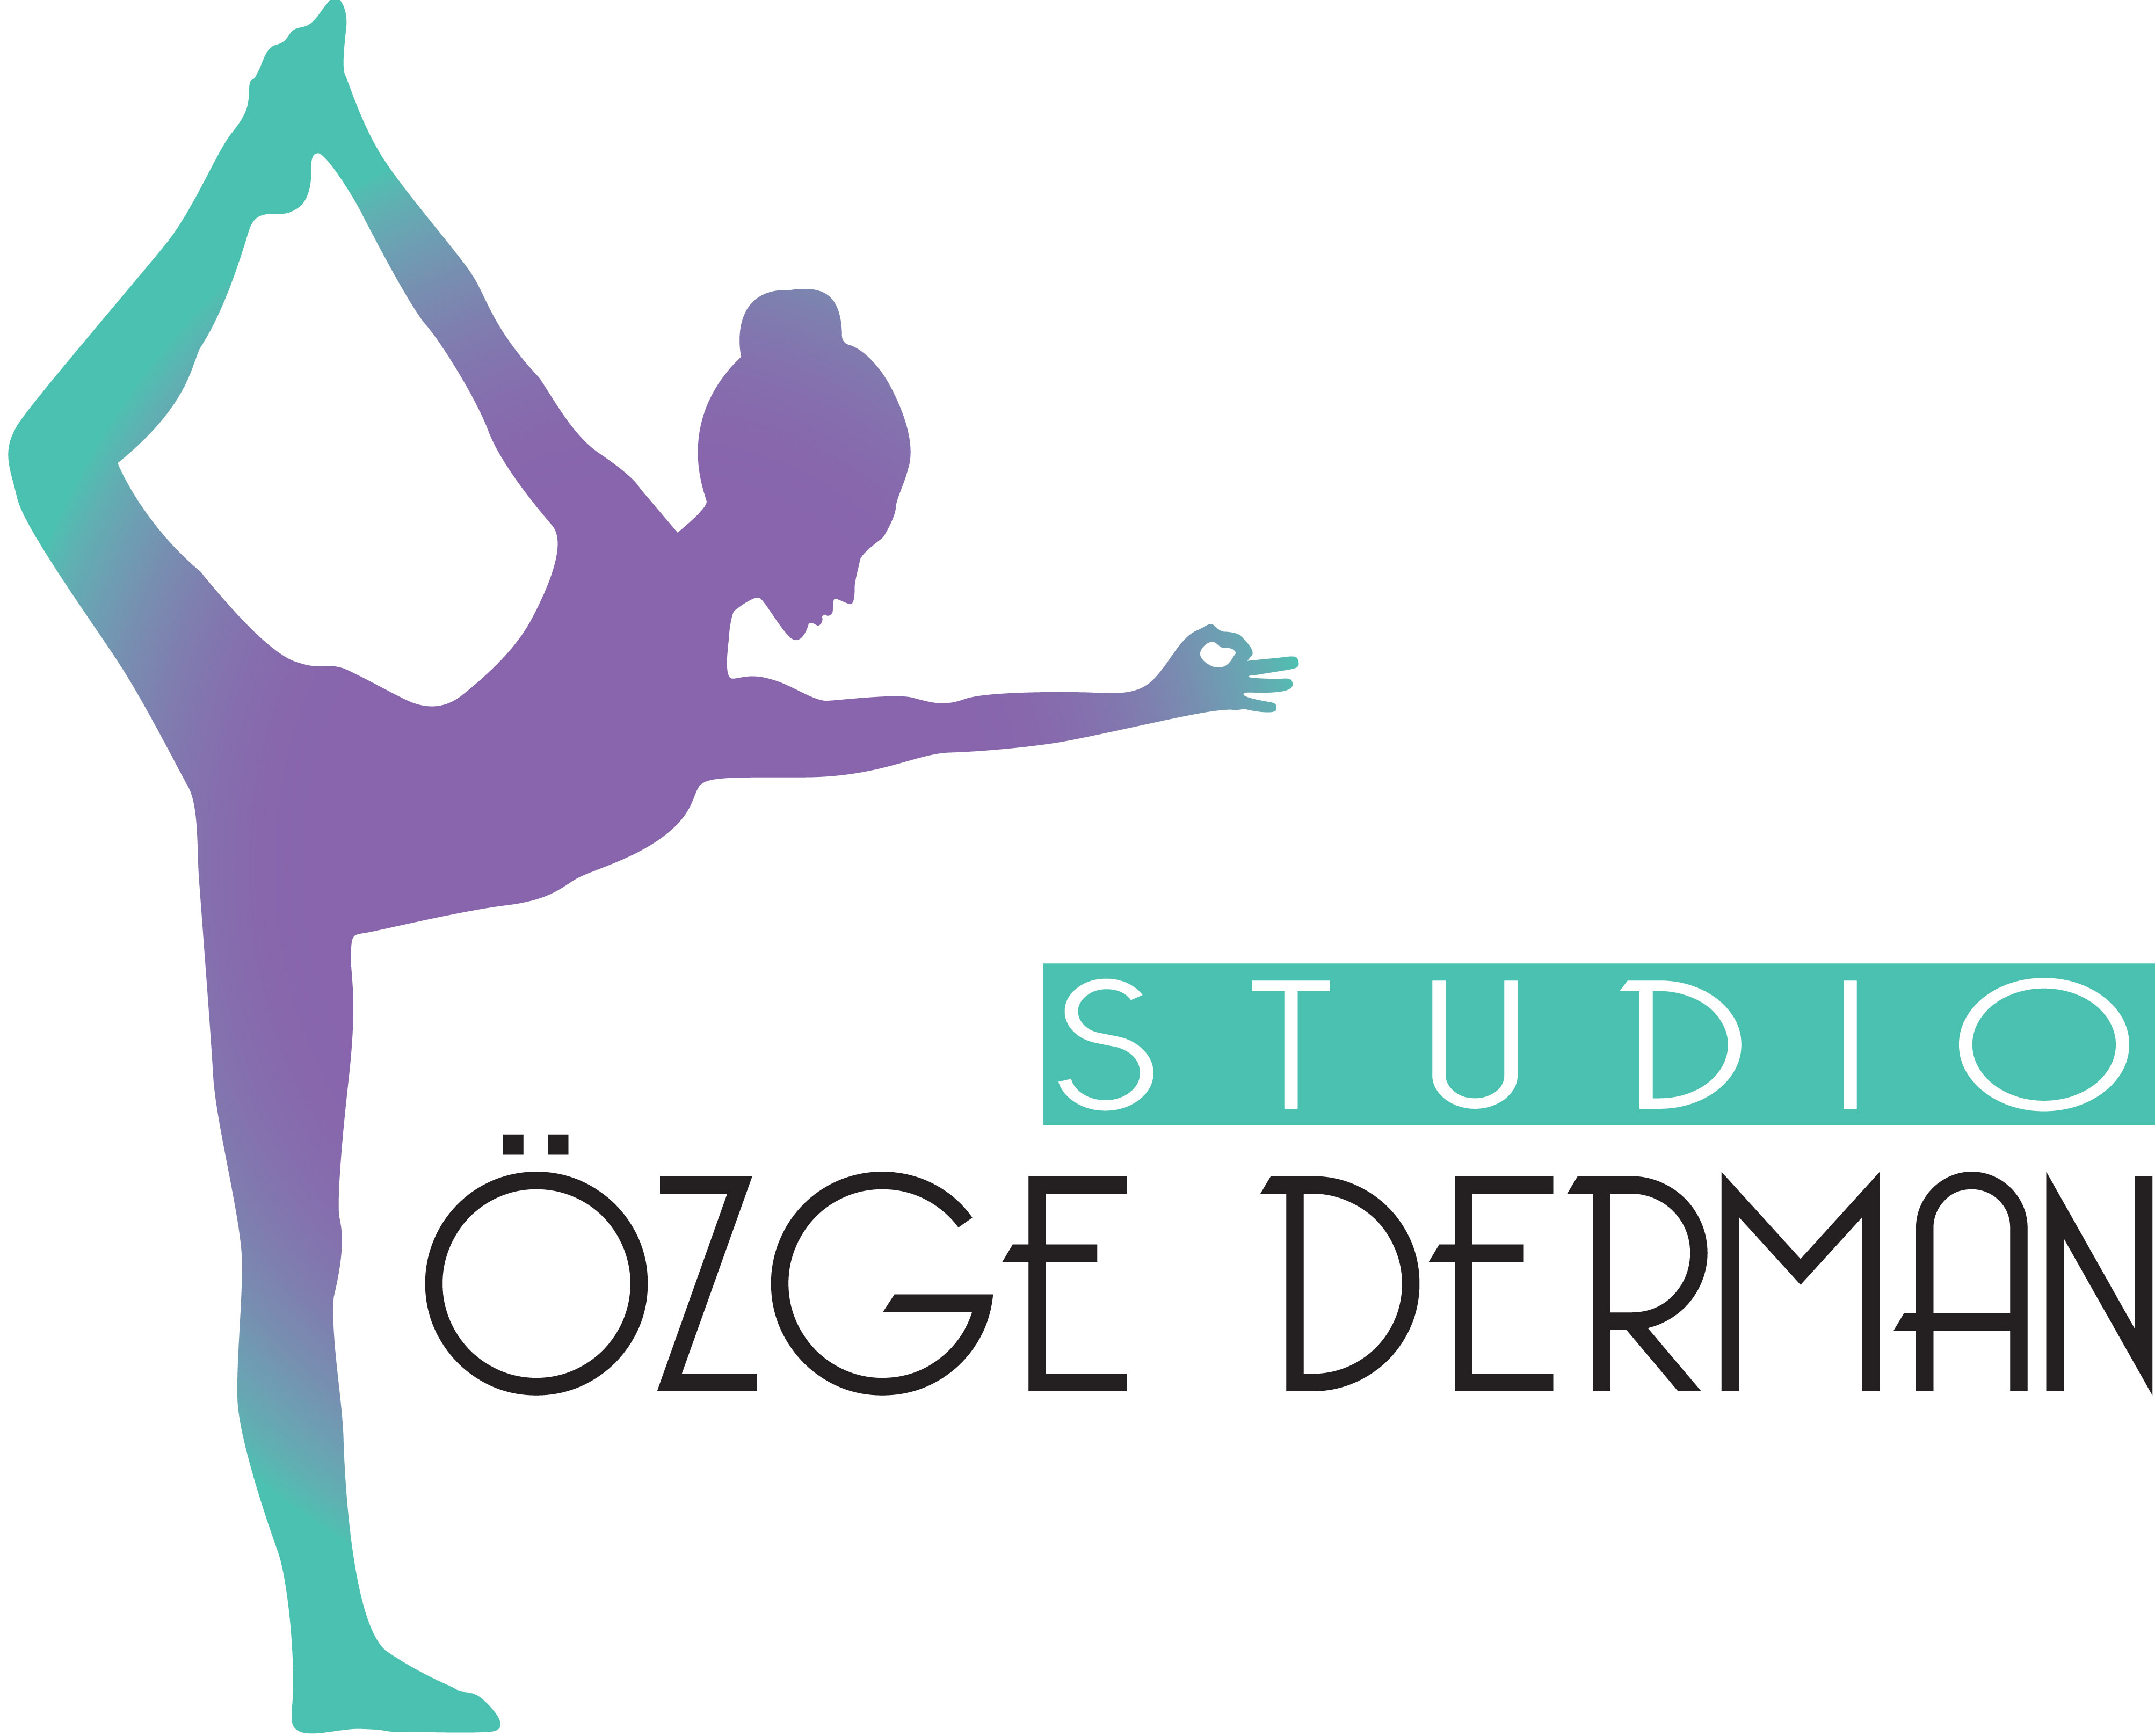 Özge Derman<br /><br />Pilates,Yoga, Dance, Barre, Floor Barre